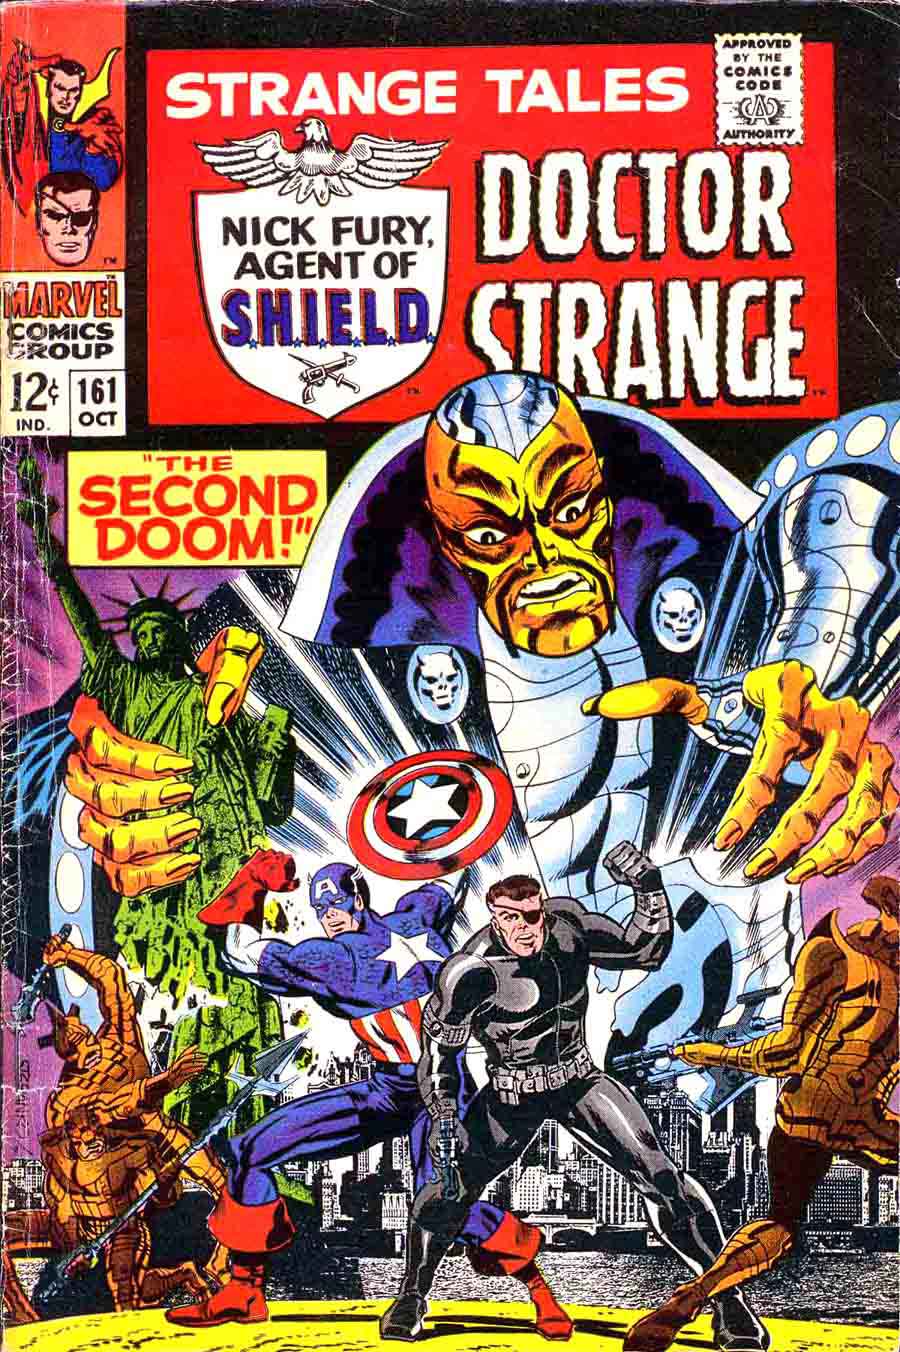 Strange Tales v1 #161 nick fury shield comic book cover art by Jim Steranko